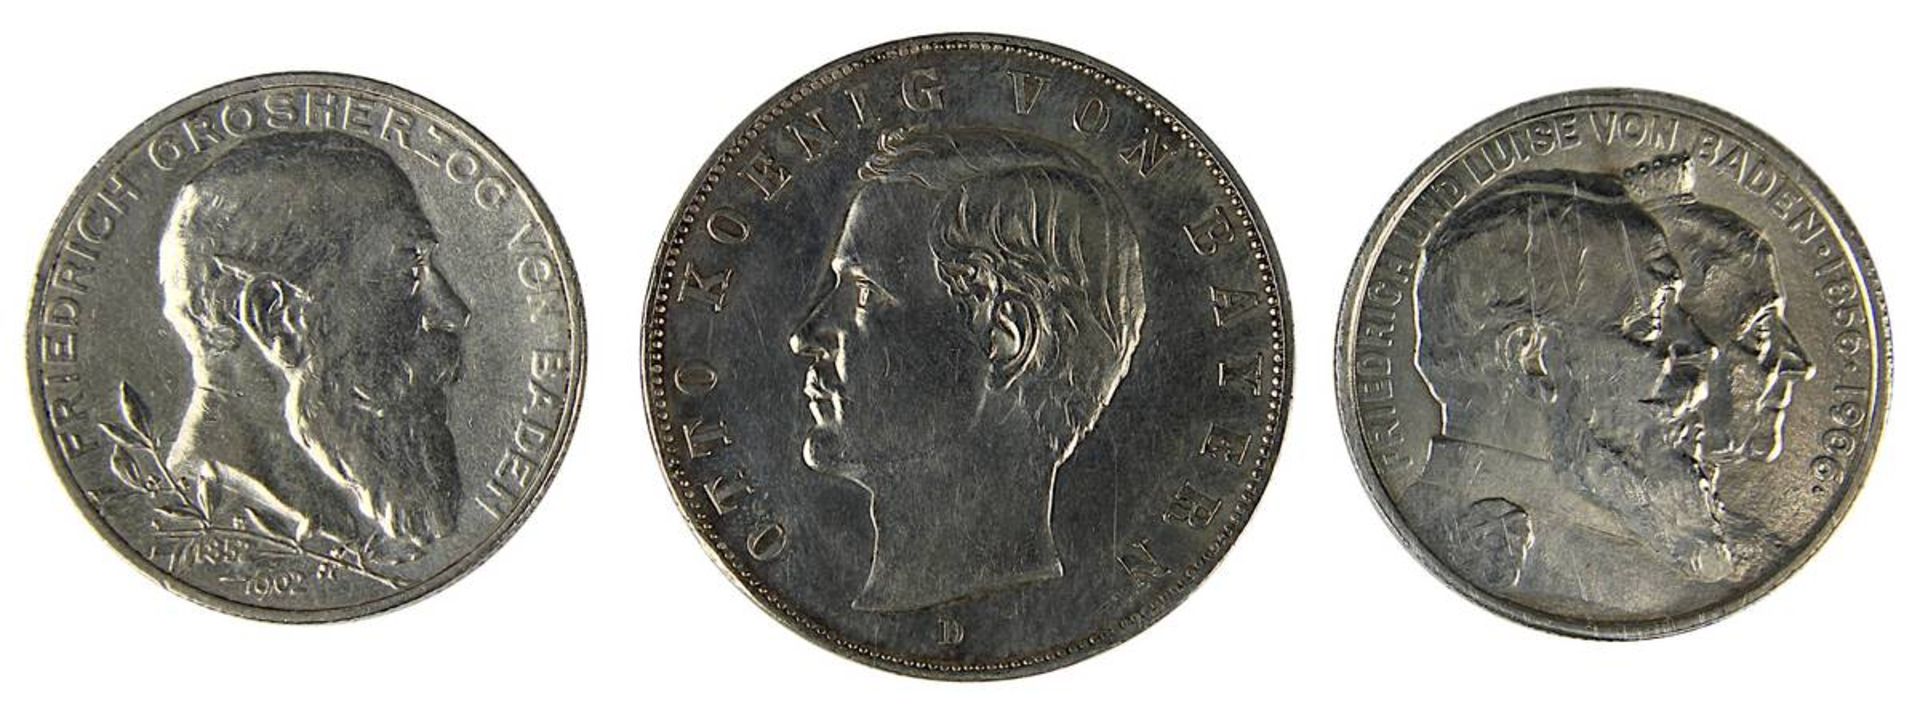 3 Münzen Deutsches Reich, 900er Silber, Baden u. Bayern, 1902, 1906 u. 1912, Münze zu 2 Mark, Avers: